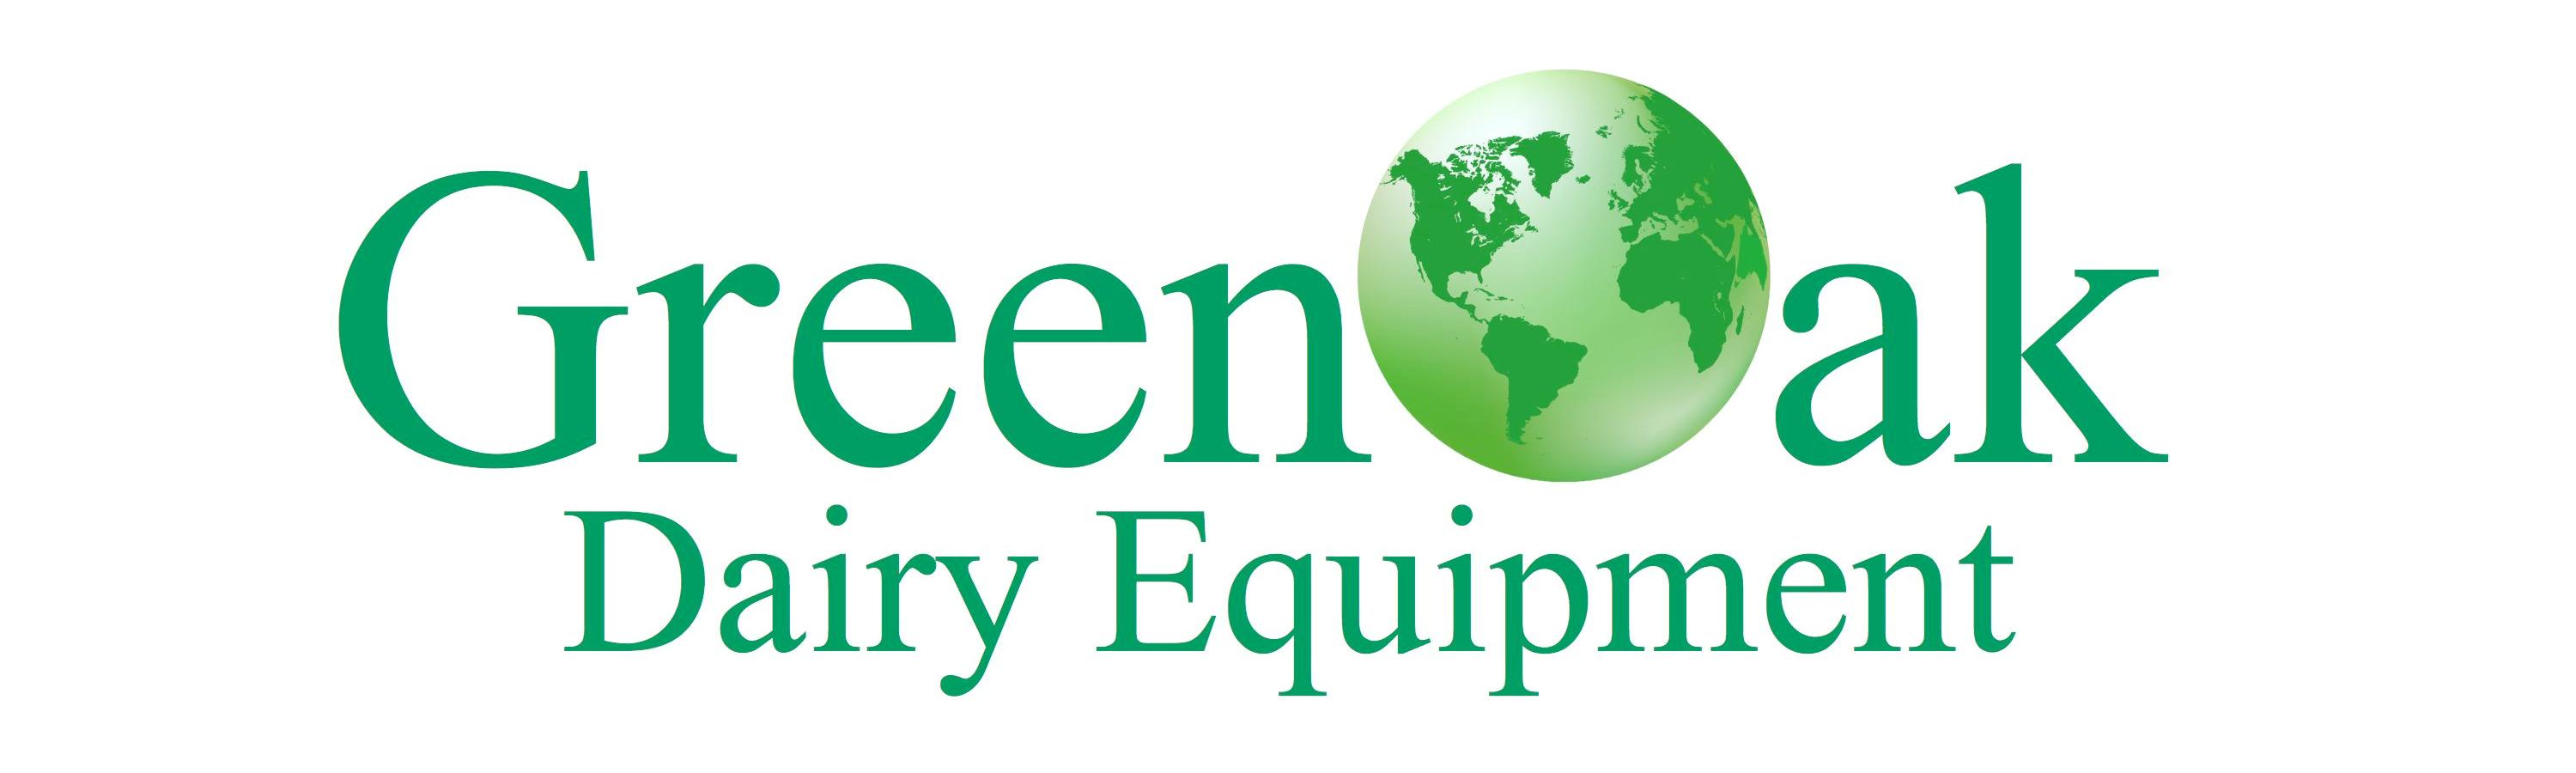 Greenoak Dairy Equipment